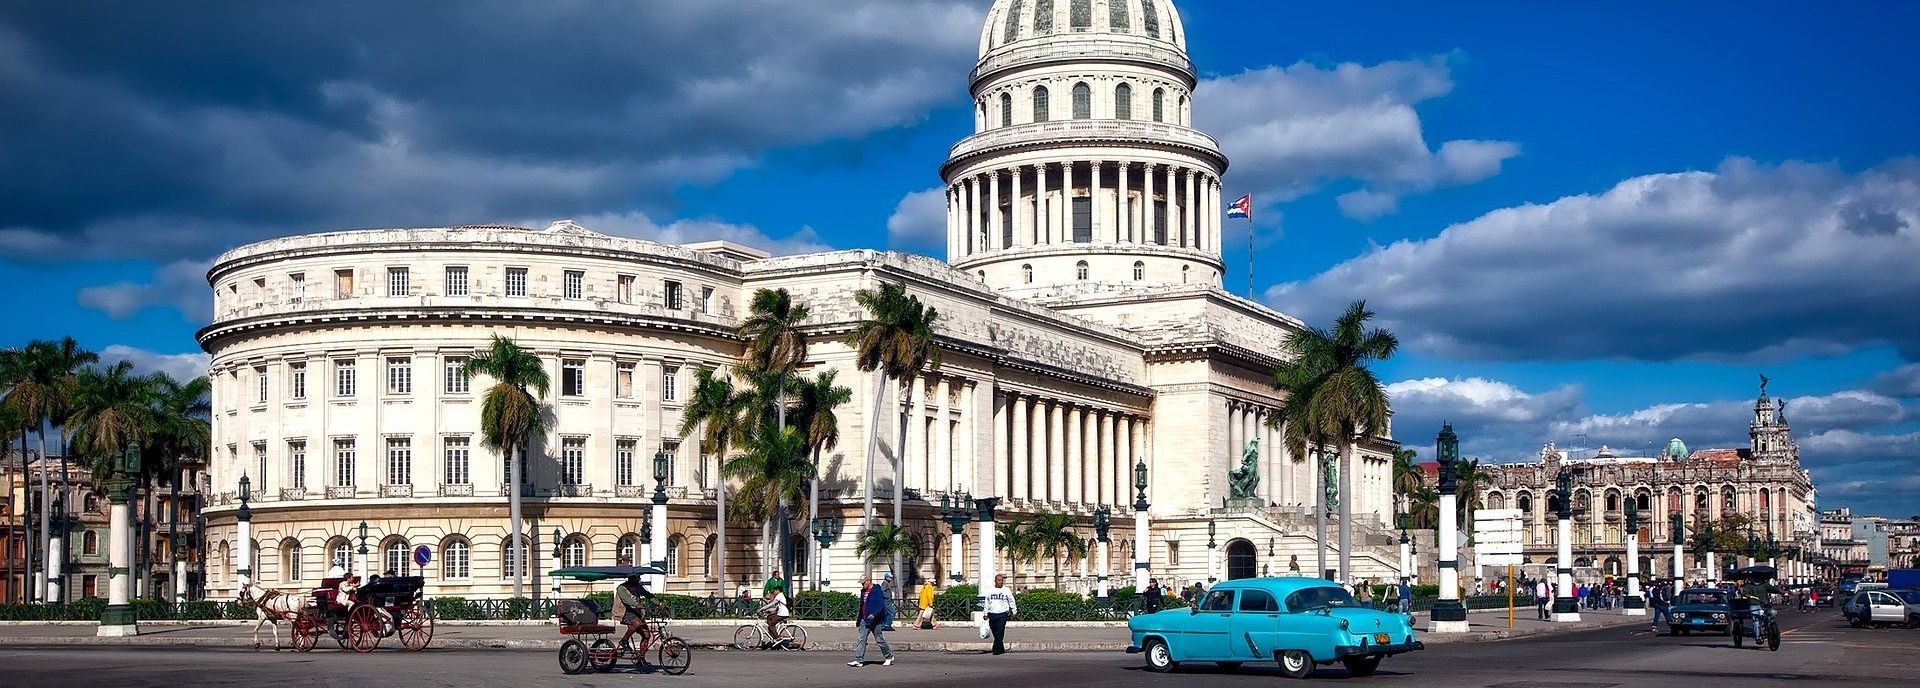 Städtereise Havana Havanna